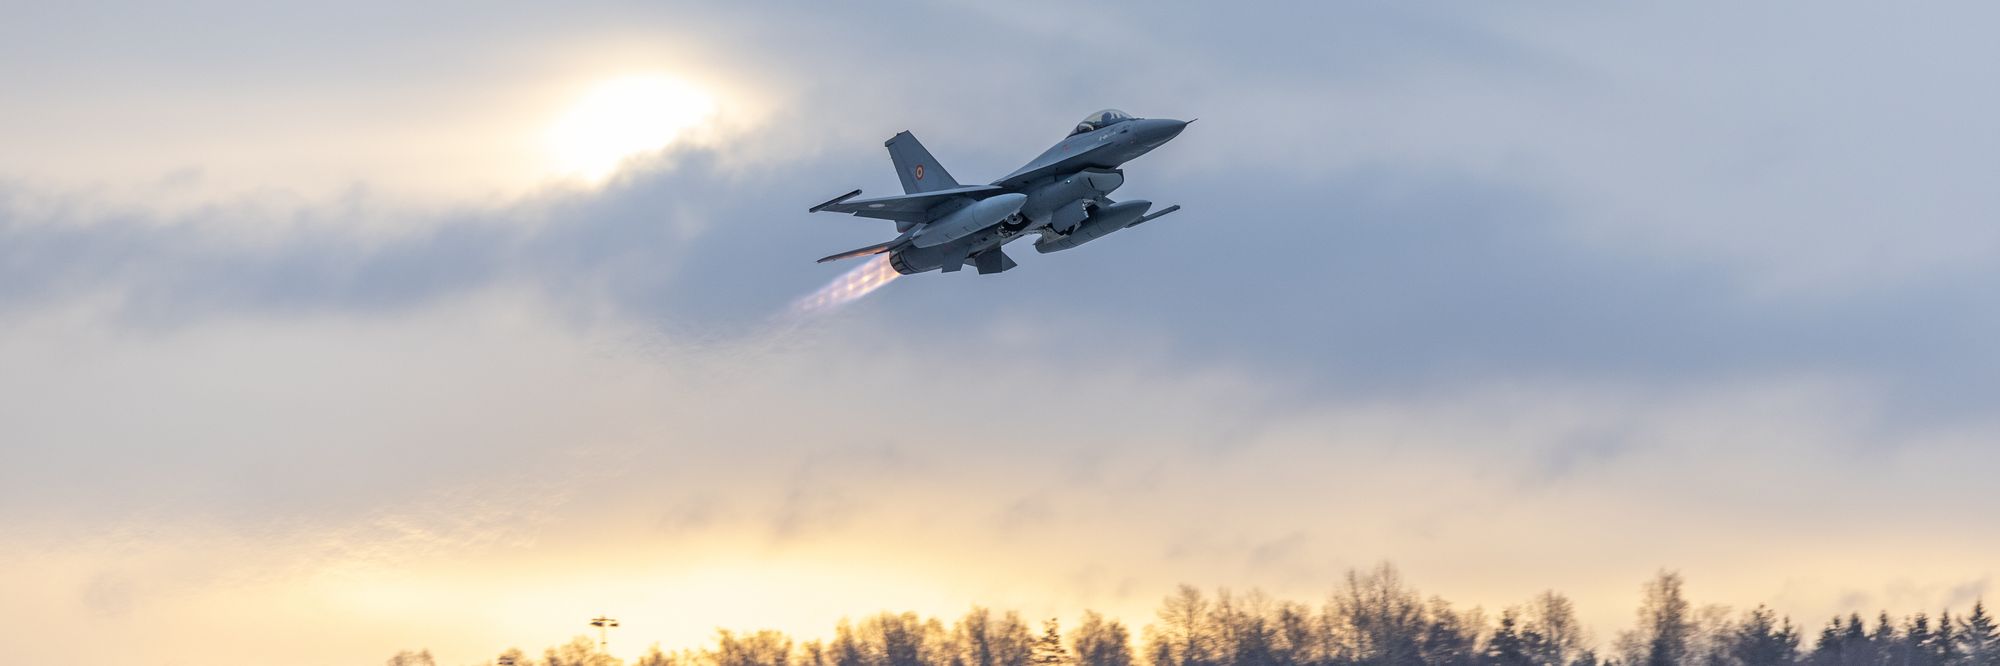 Her forlater F-16-flyene Norge – nå i rumenske farger